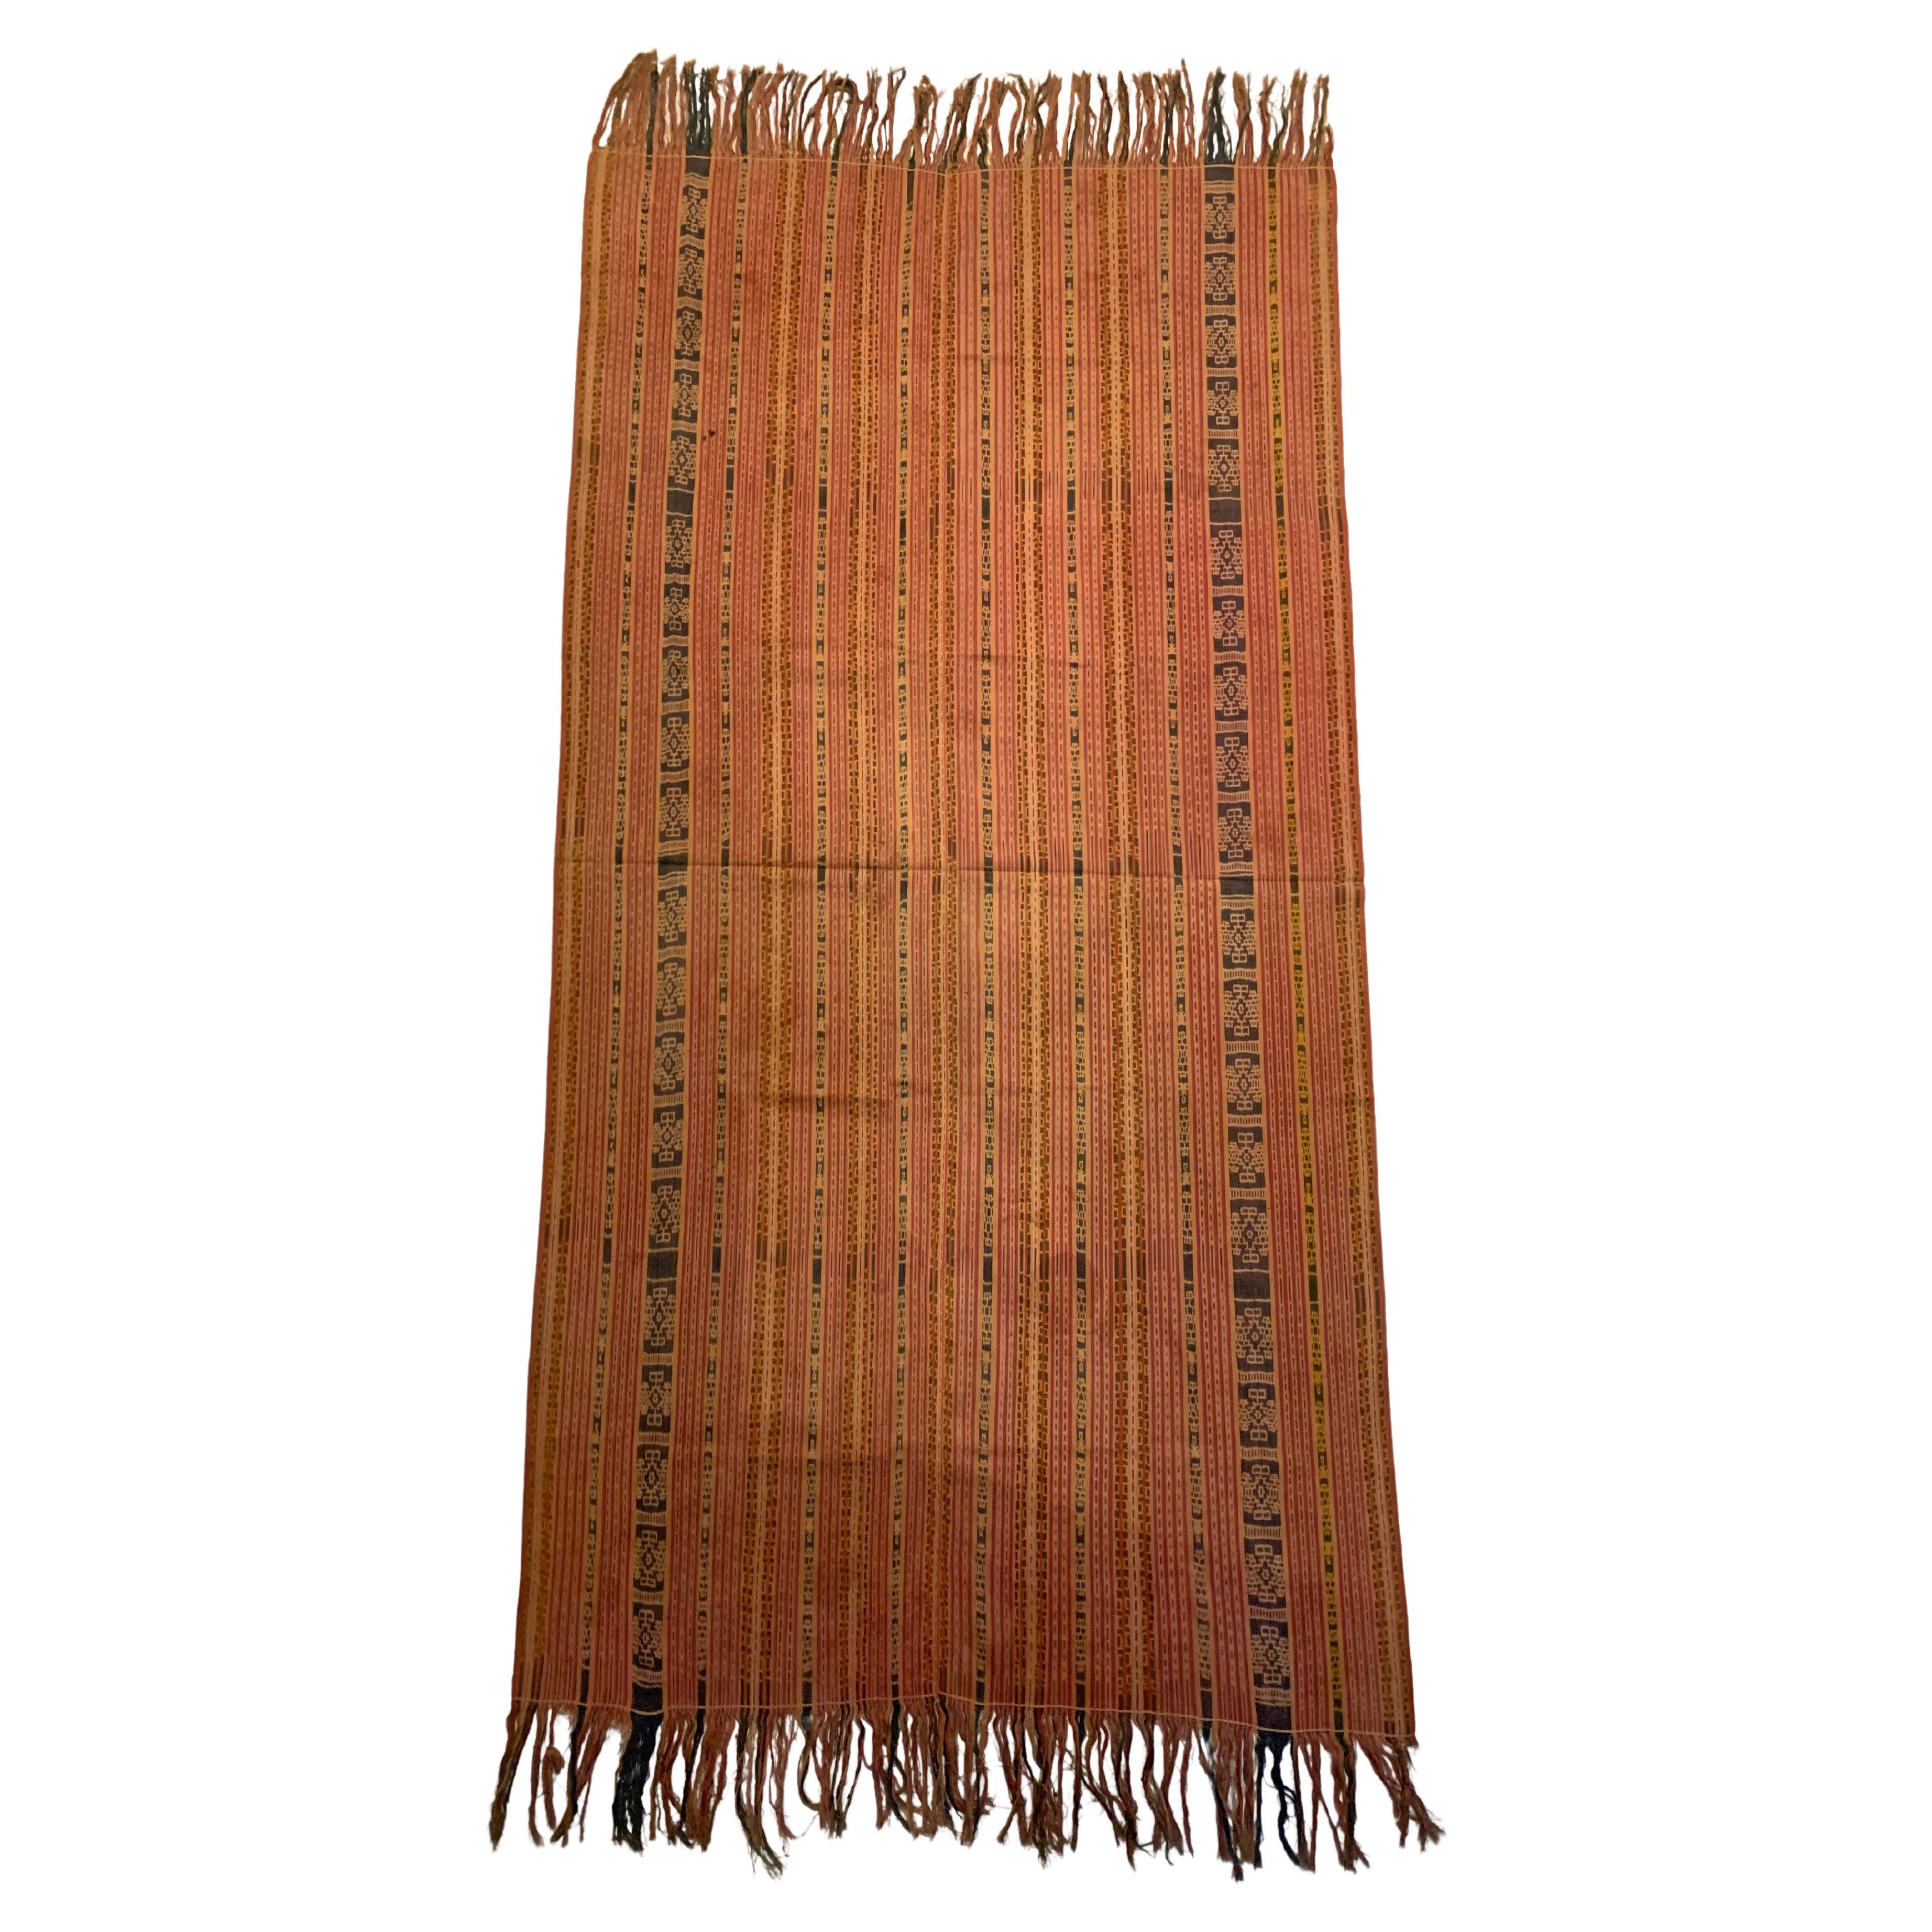 Seltenes Ikat-Textil von Timor mit atemberaubenden Stammesmotiven und Farben, Indonesien, um 1900